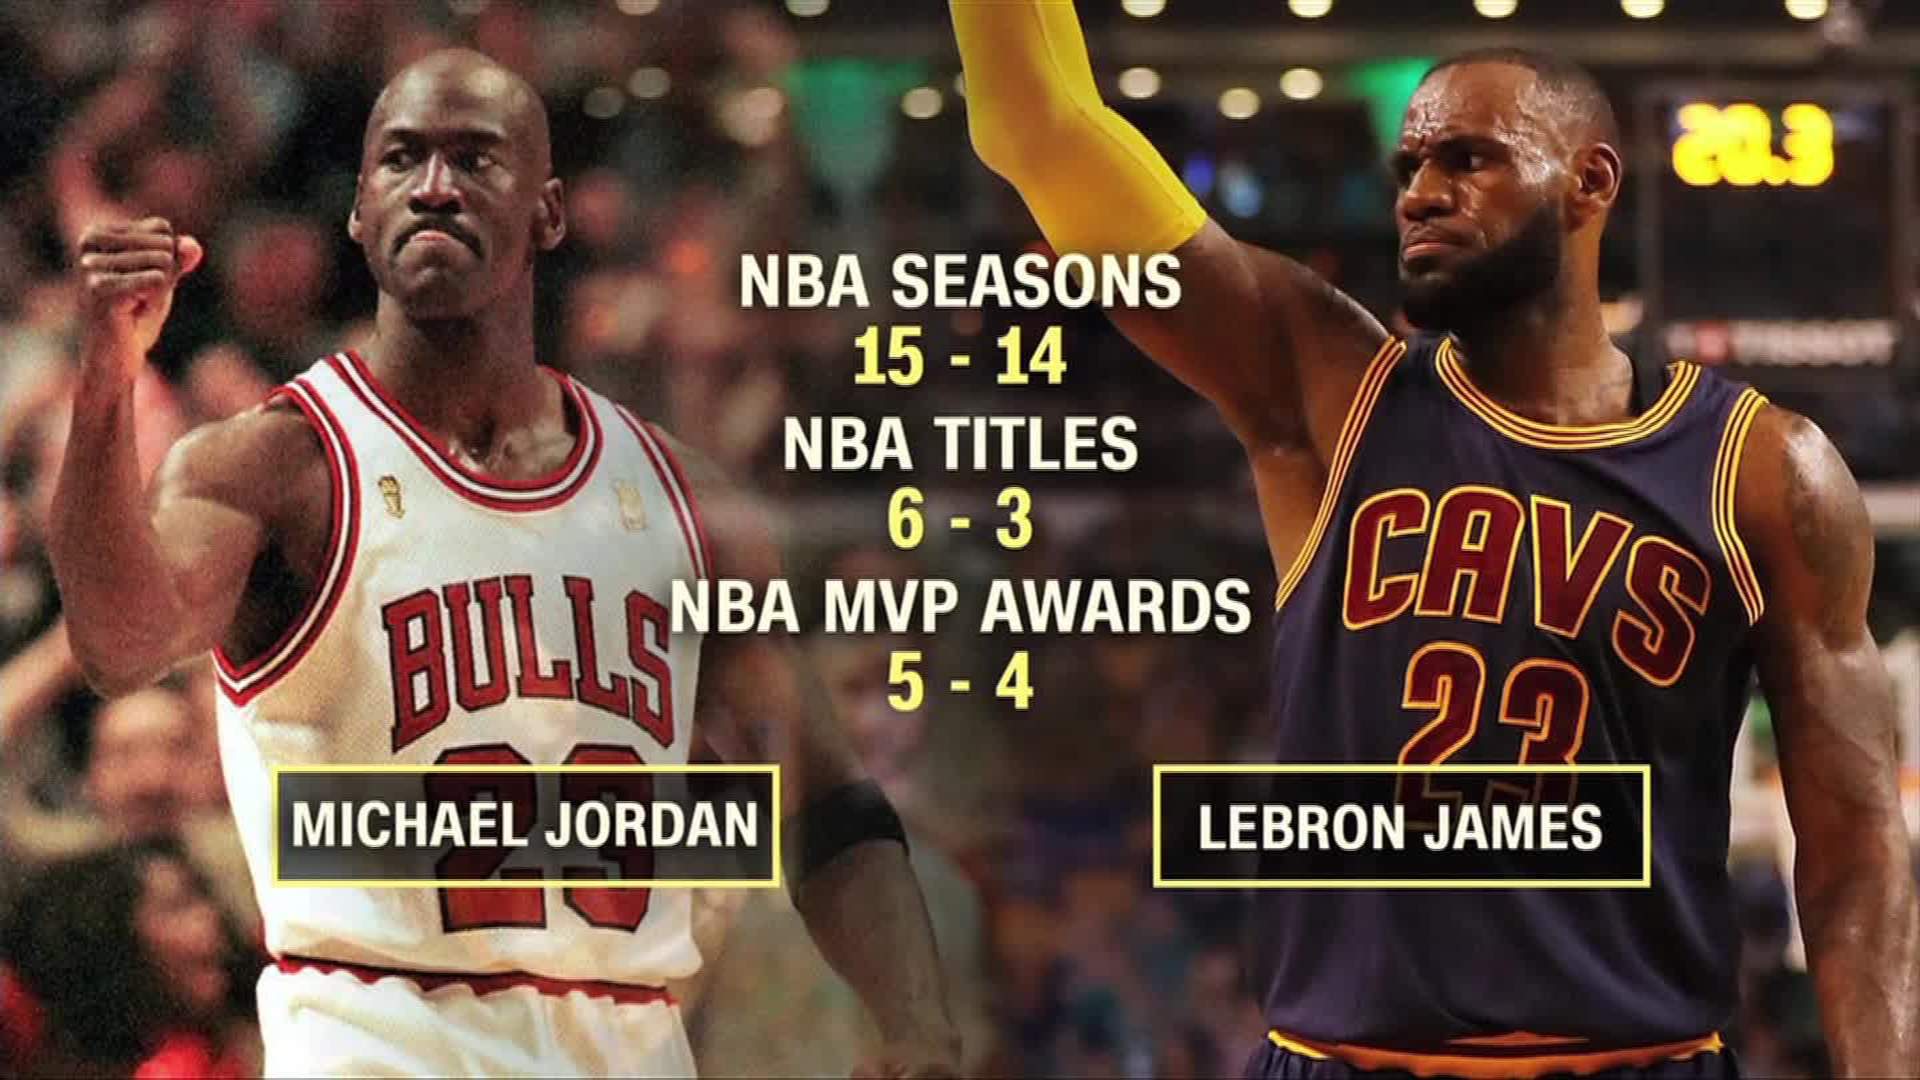 LeBron James vs. Michael Jordan: Who's 